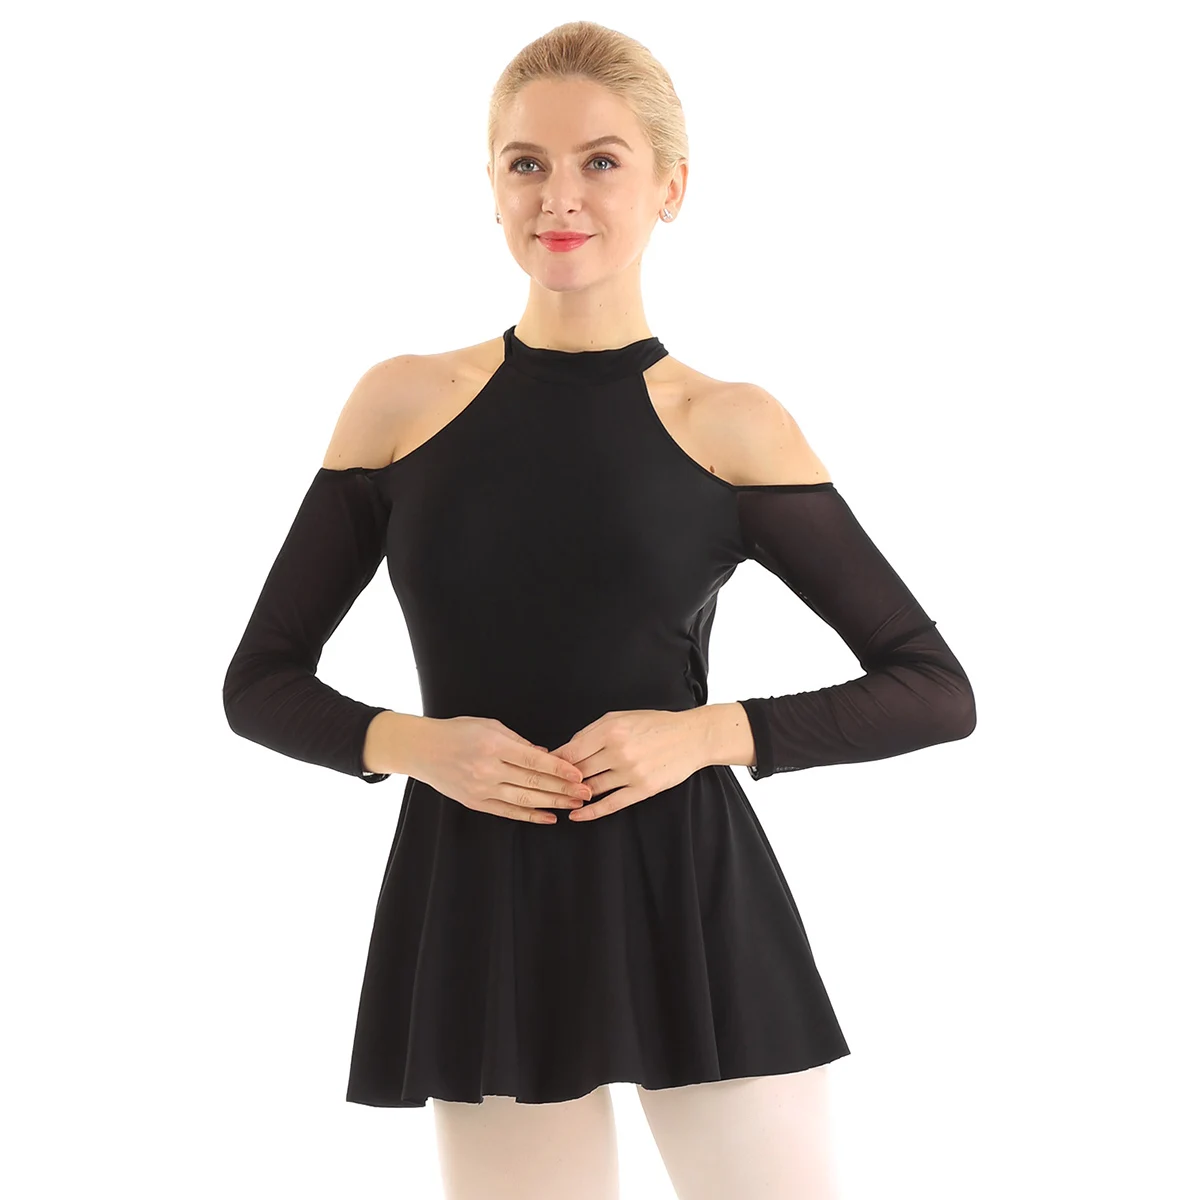 Женские взрослые балерины, современные танцевальные костюмы, с вырезами на плечах, с перекрещивающейся спинкой, балетное танцевальное гимнастическое трико, бальное платье - Цвет: Black